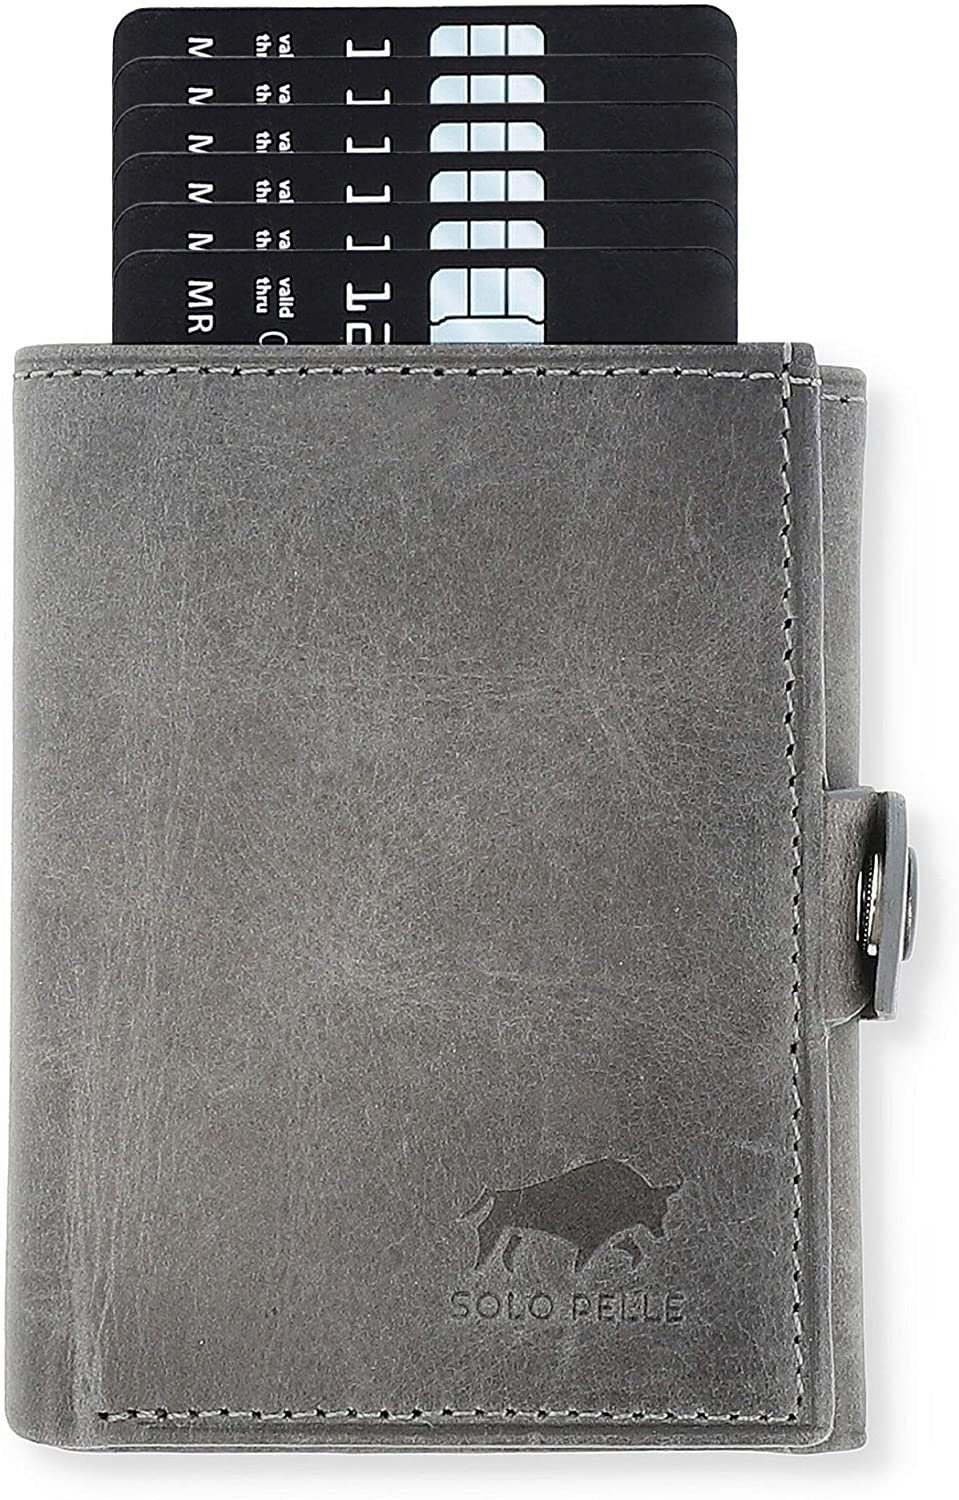 Solo Pelle Mini Geldbörse Slim Wallet mit Münzfach [12 Karten] Slimwallet Riva [RFID-Schutz], echt Leder, Made in Europe in elegantem Design mit RFID Schutz Steingrau